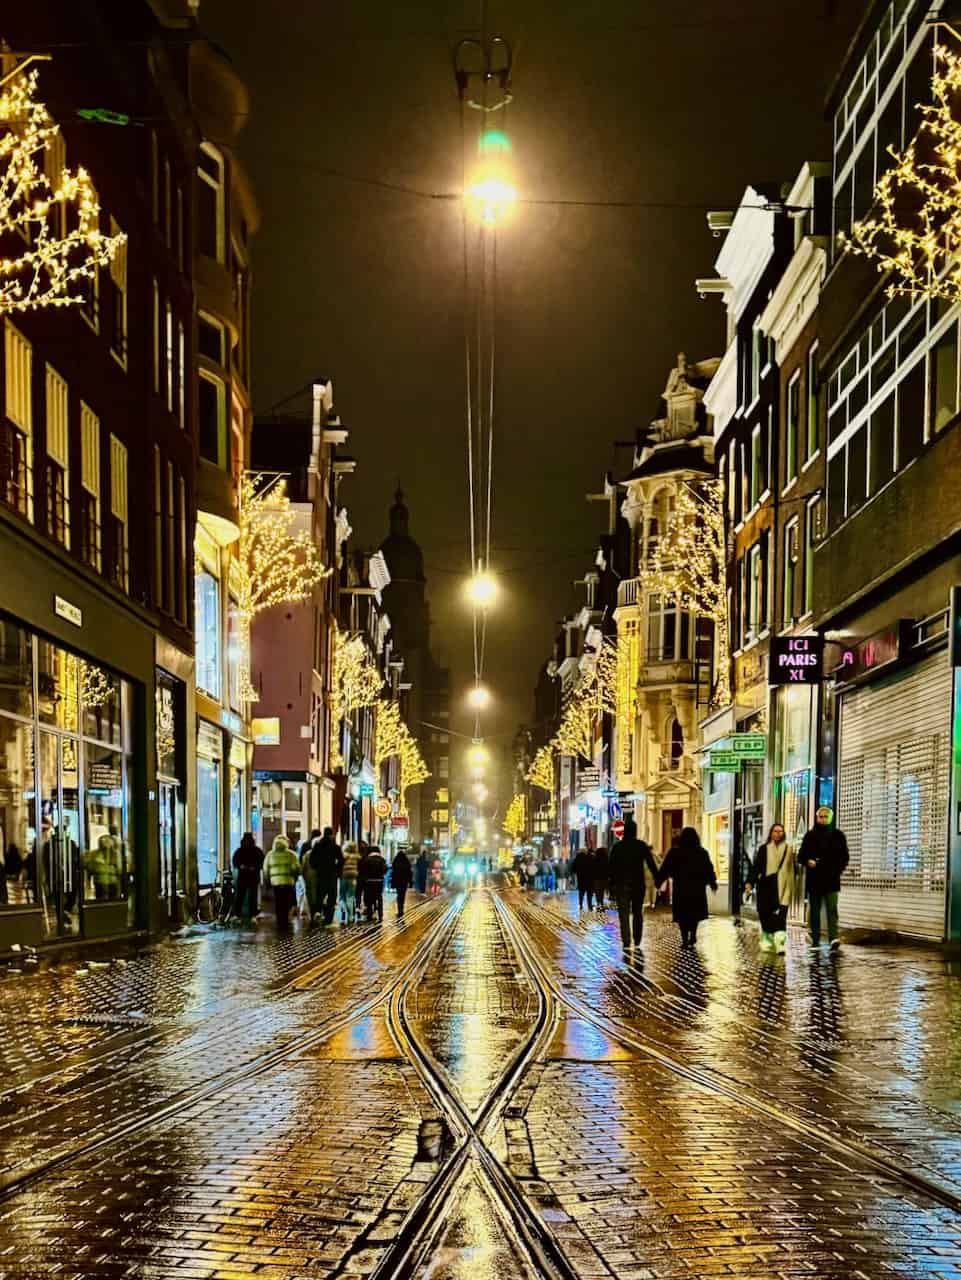 amsterdam by night